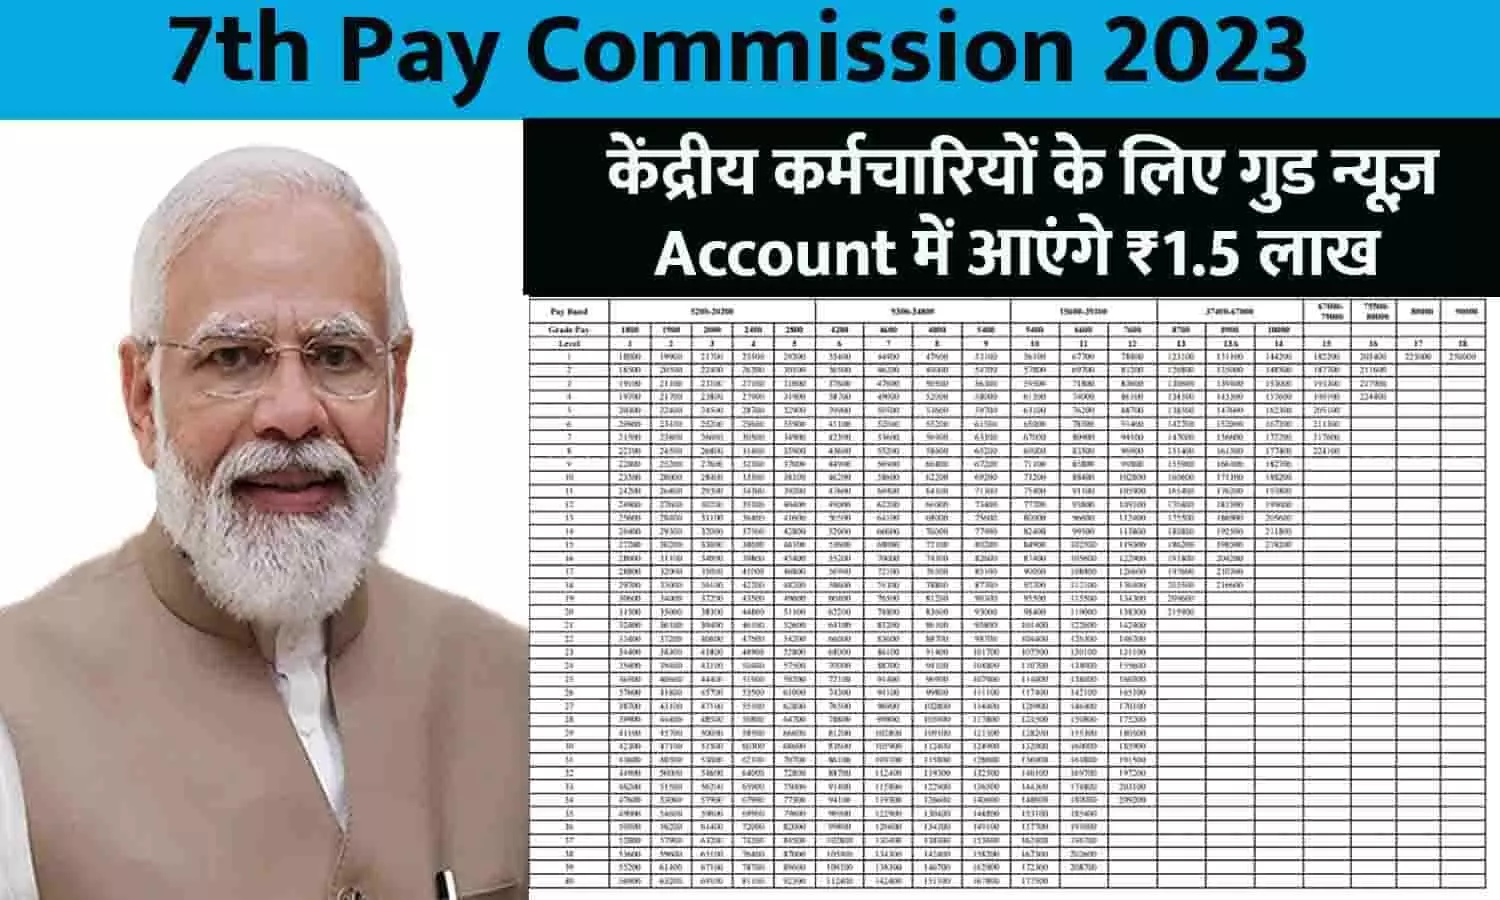 7th Pay Commission Big Alert 2023: केंद्रीय कर्मचारियों के लिए गुड न्यूज़! Account में आएंगे ₹1.5 लाख